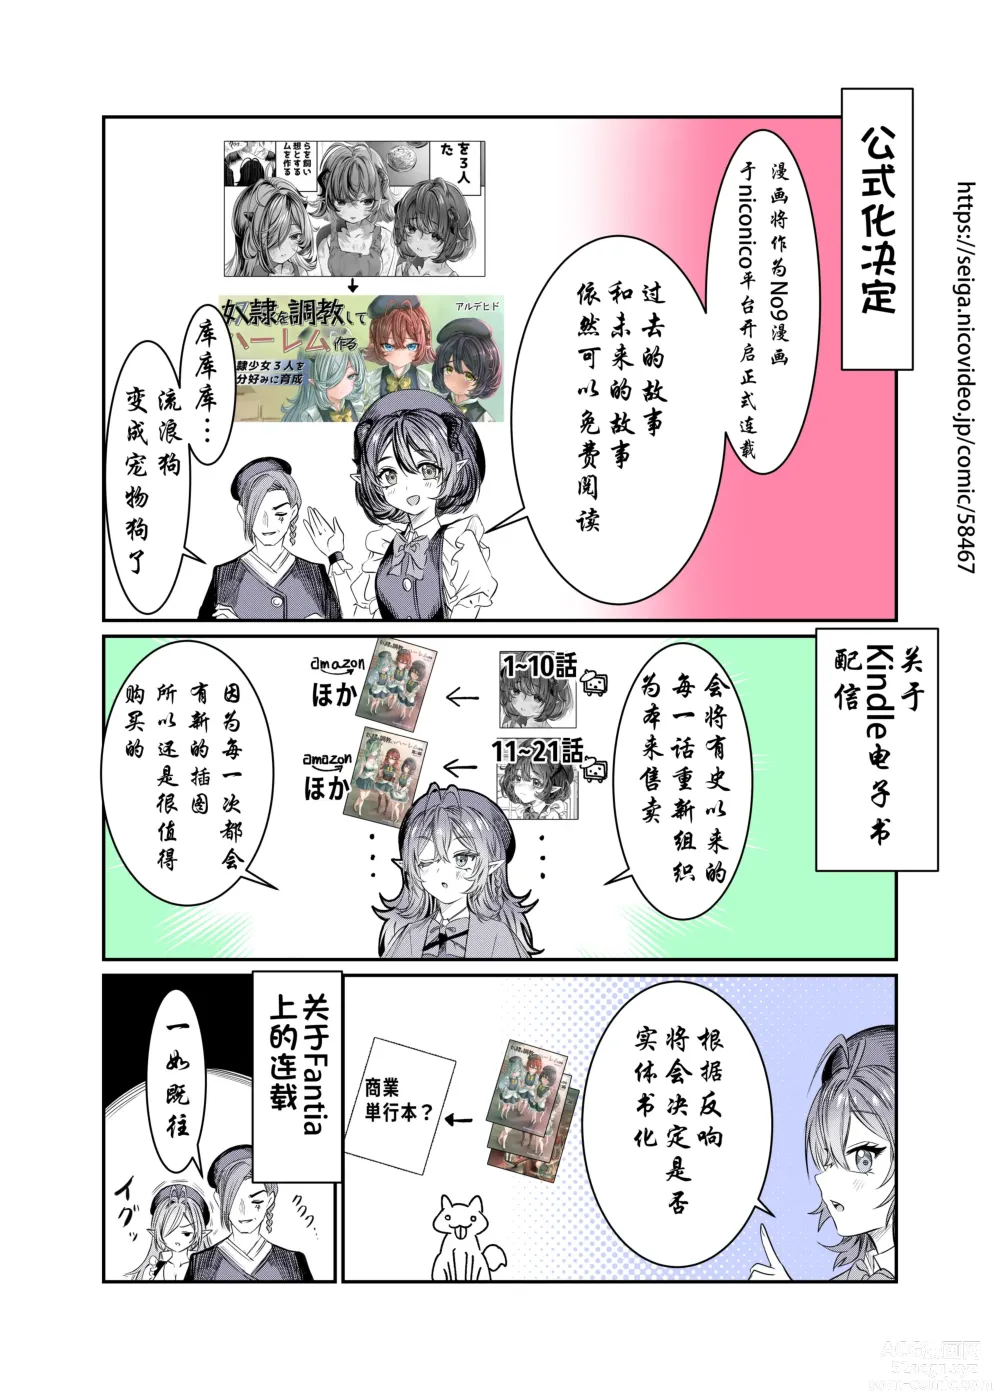 Page 307 of doujinshi Dorei o chokyo shite haremu tsukuru